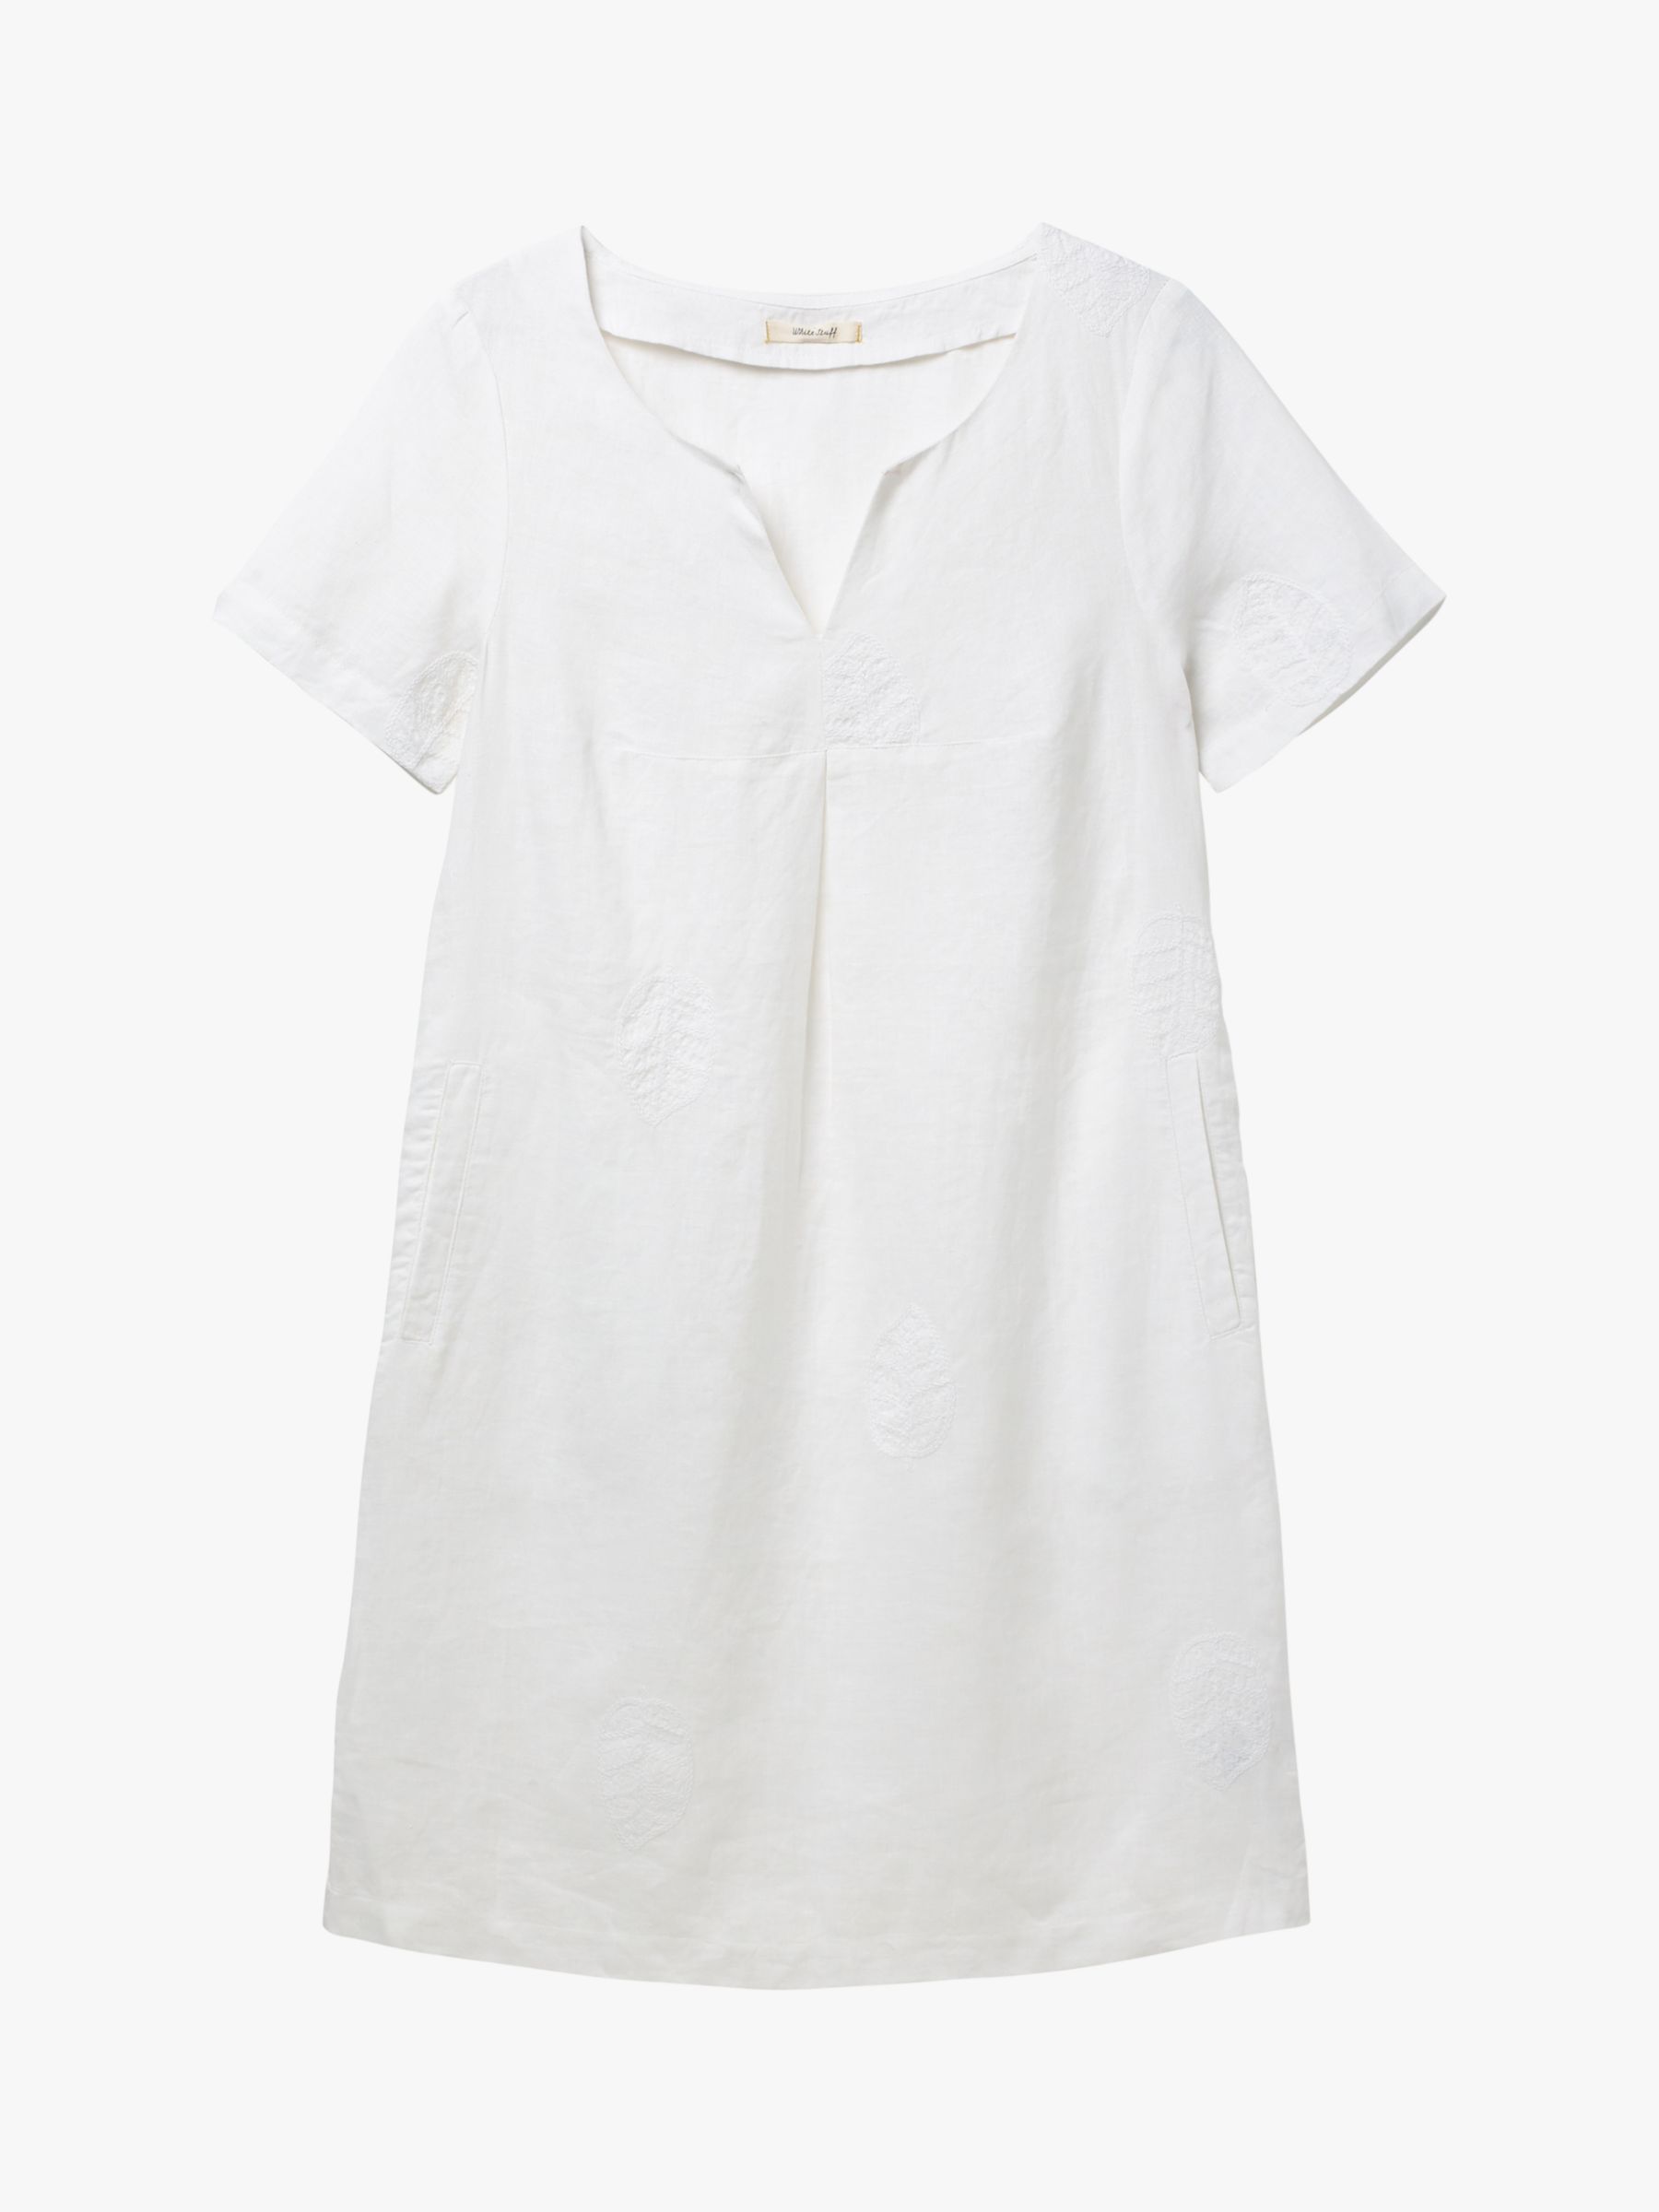 White Stuff Ondine Linen Shift Dress, White